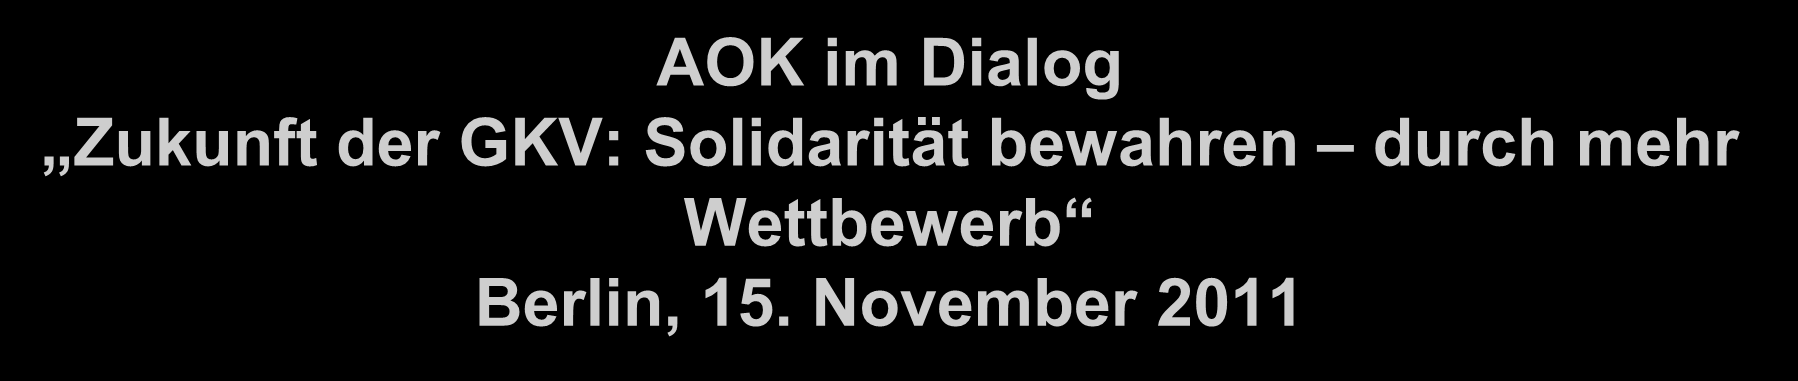 AOK im Dialog Zukunft der GKV: Solidarität bewahren durch mehr Wettbewerb Berlin, 15.